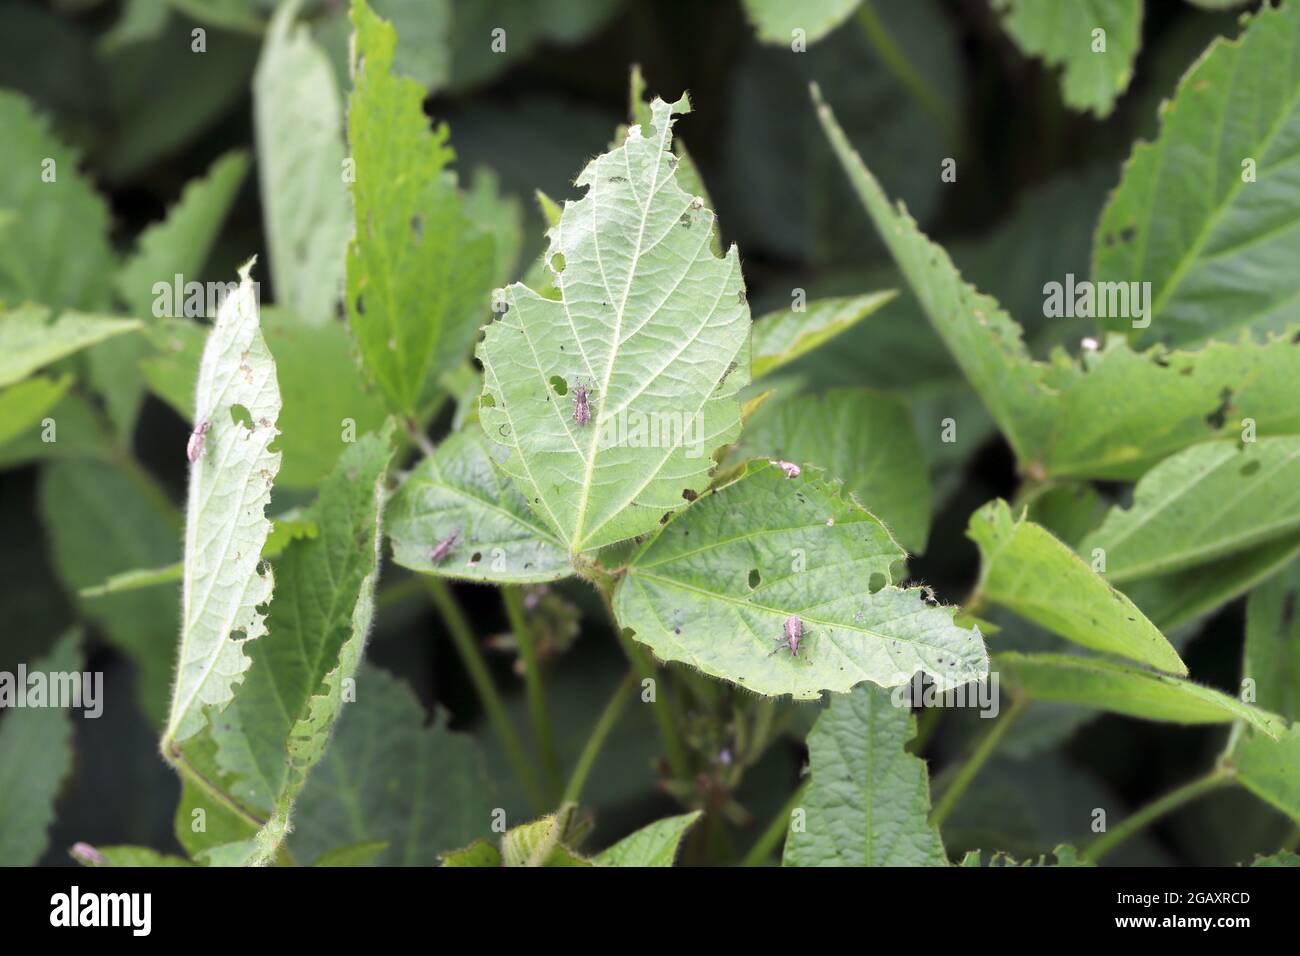 Sojabohnenpflanzen, die durch Lupinenkäfer beschädigt wurden - Charagmus (ehemals Sitona) gressorius und Griseus - eine Art von Weevils Curculionidae, Schädling der Fabaceae. Stockfoto